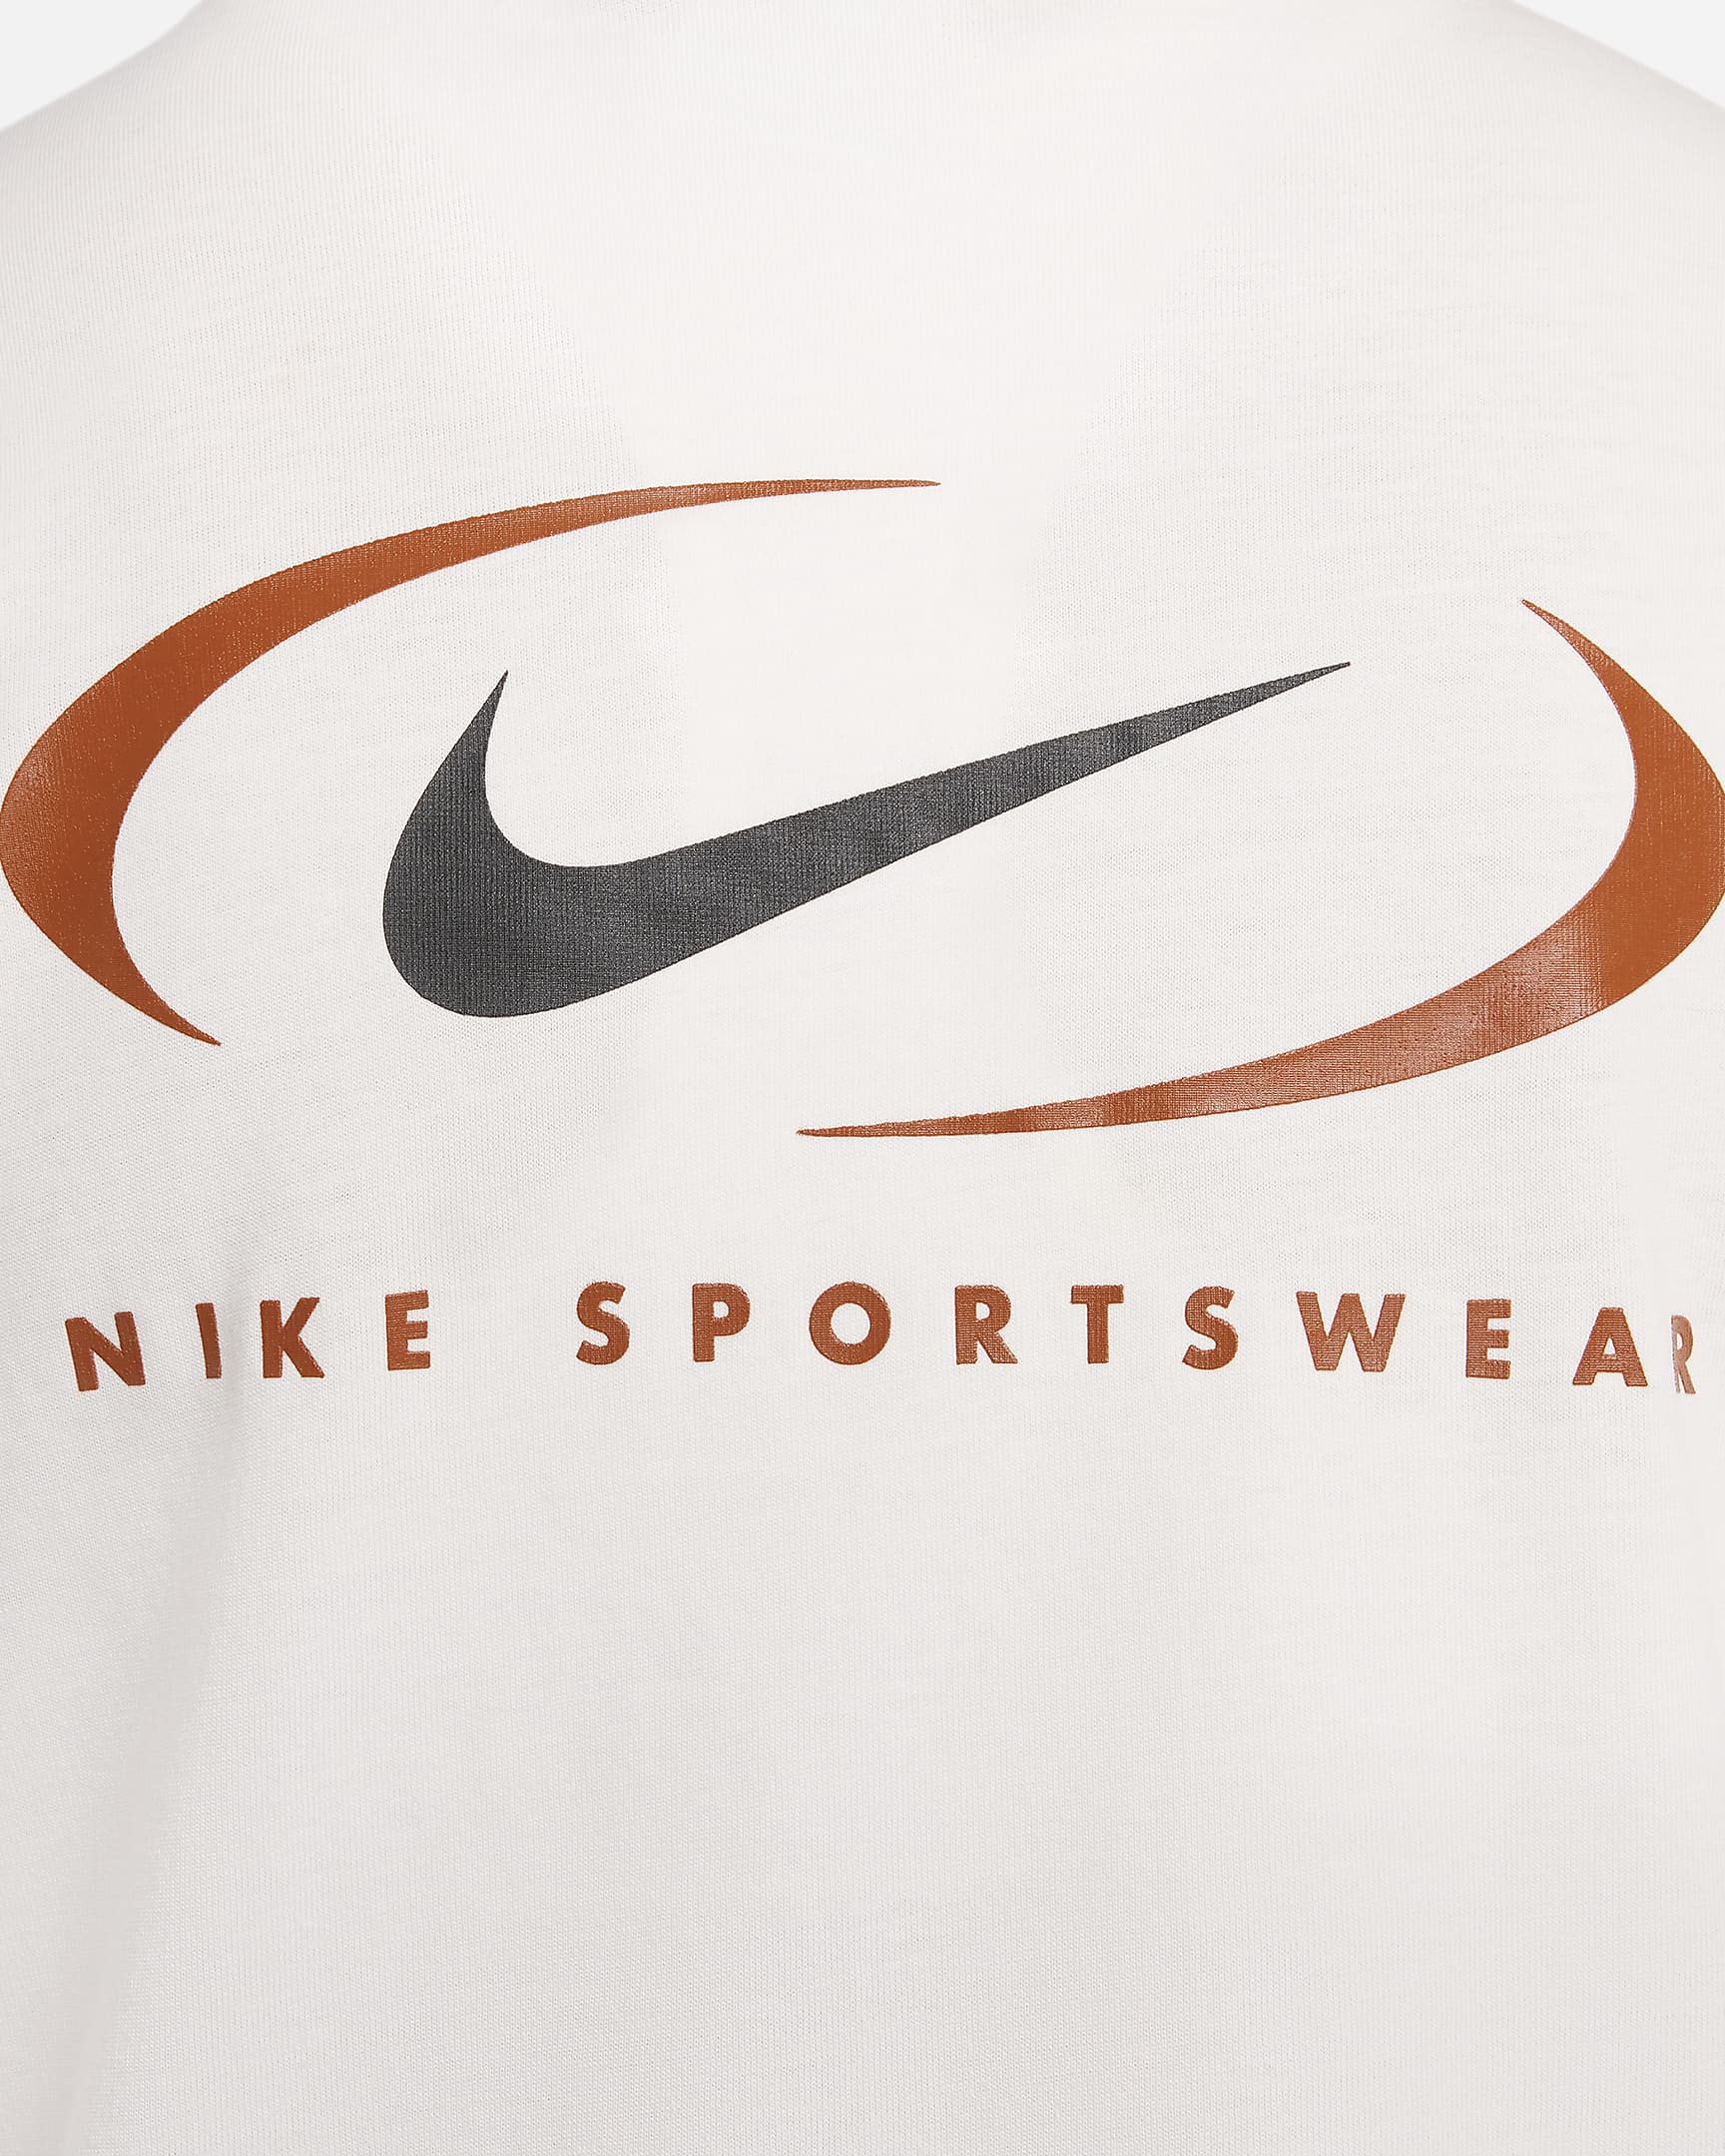 Nike Sportswear Women's Graphic T-Shirt. Nike.com